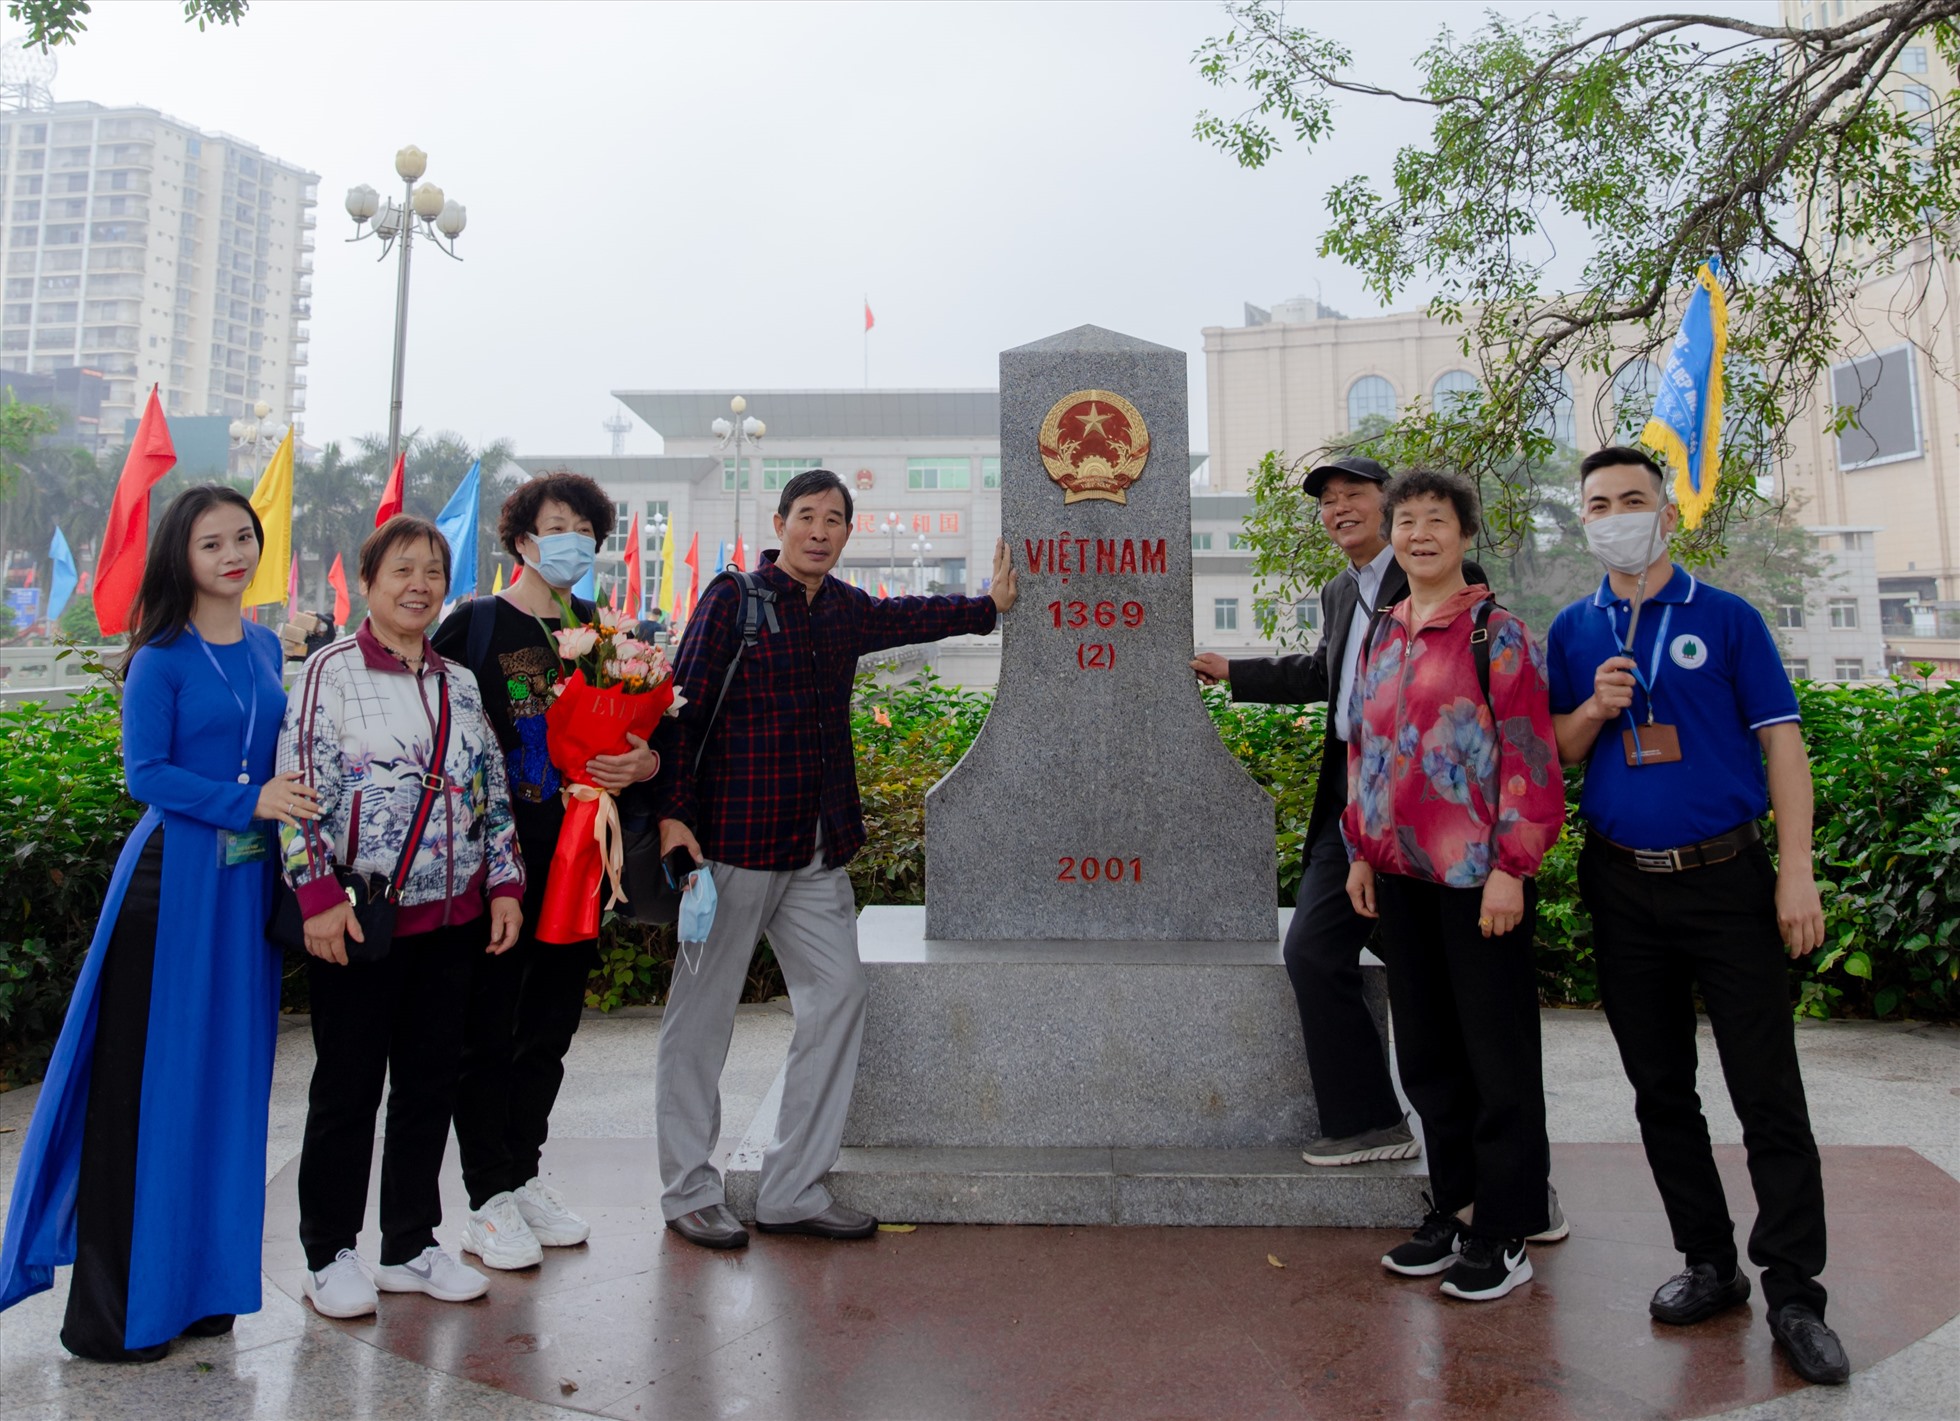 Nhà lưu niệm Bác Hồ, Cột mốc 1369 (2) là những điểm đến đầu tiên khi khách du lịch đặt chân đến Việt Nam. Ảnh: Phòng Văn hóa thông tin TP Móng Cái